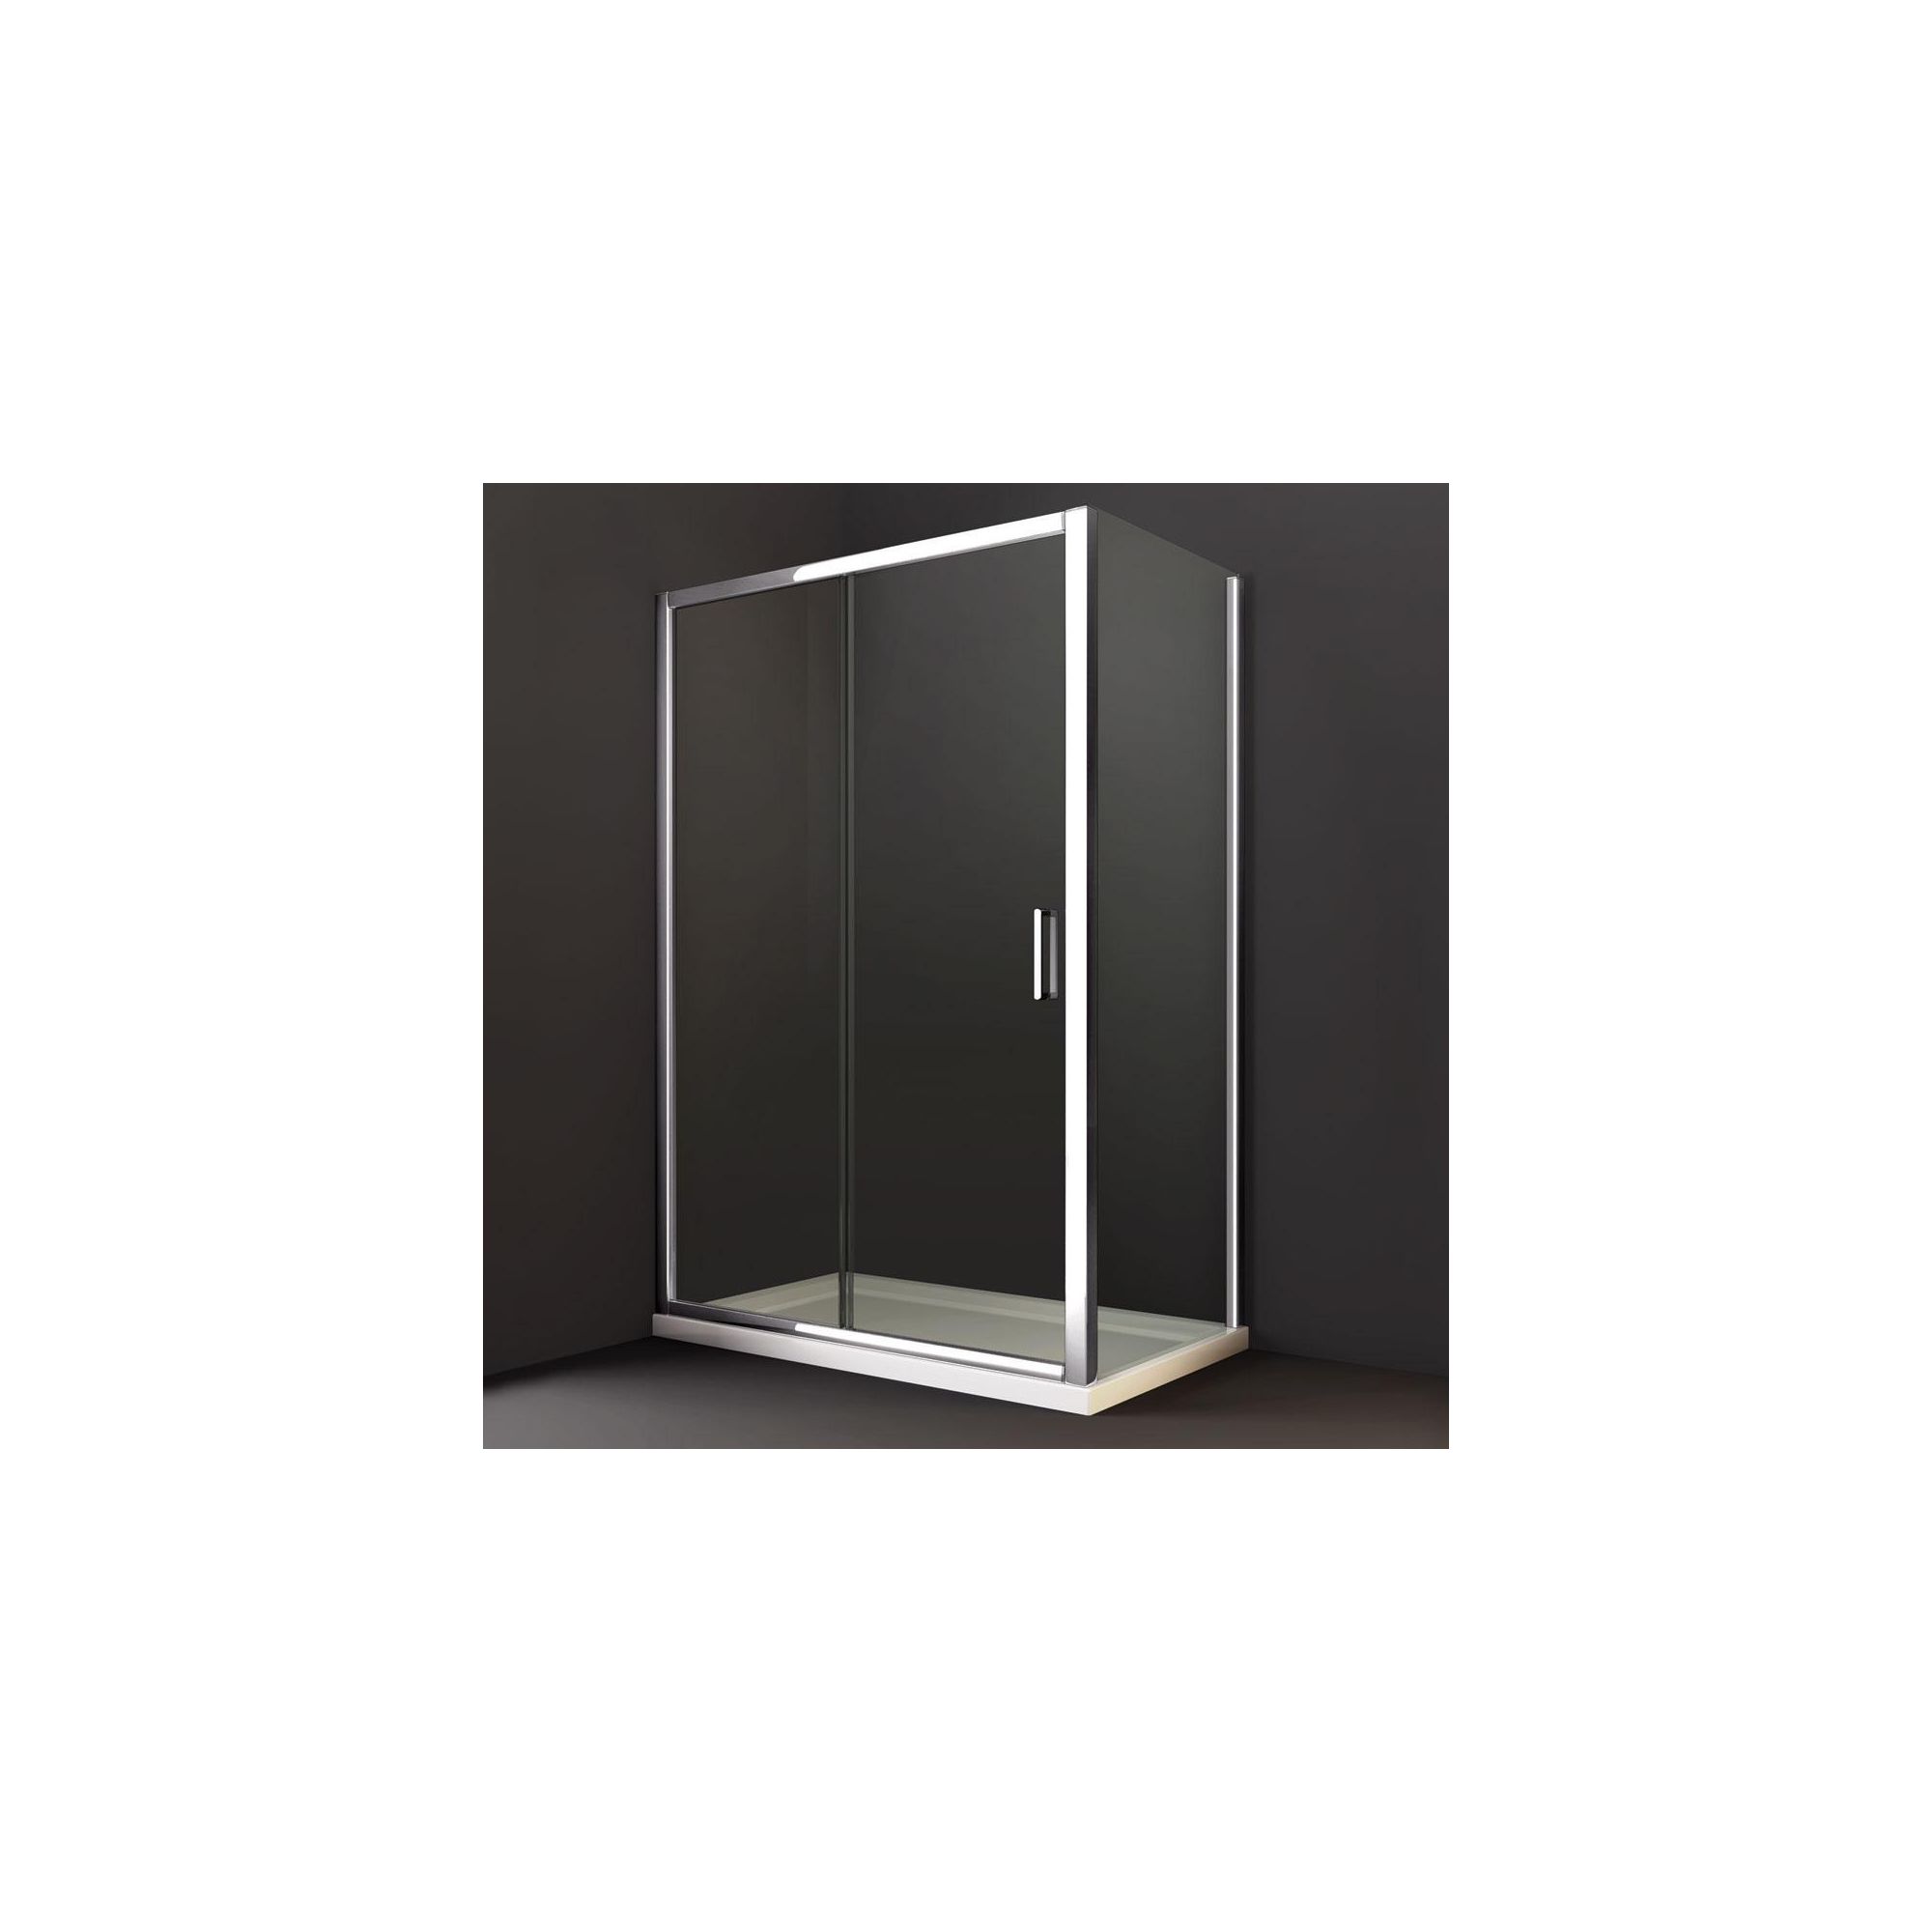 Merlyn Series 8 Sliding Shower Door, 1200mm Wide, Chrome Frame, 8mm Glass at Tesco Direct